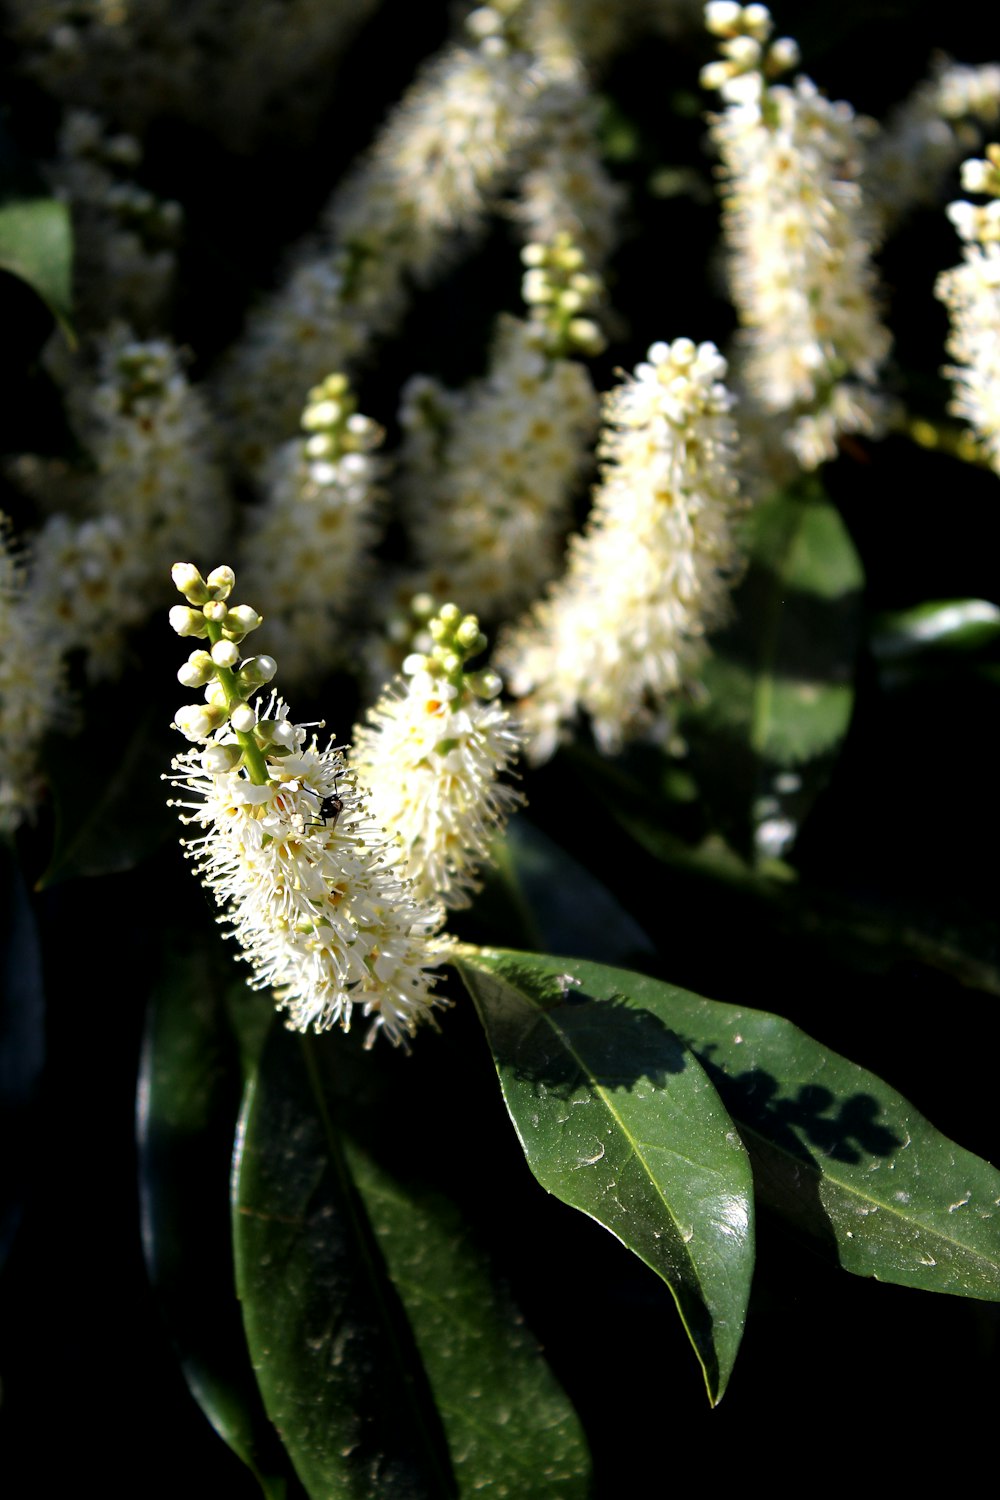 fiore bianco e verde nella fotografia con obiettivo macro